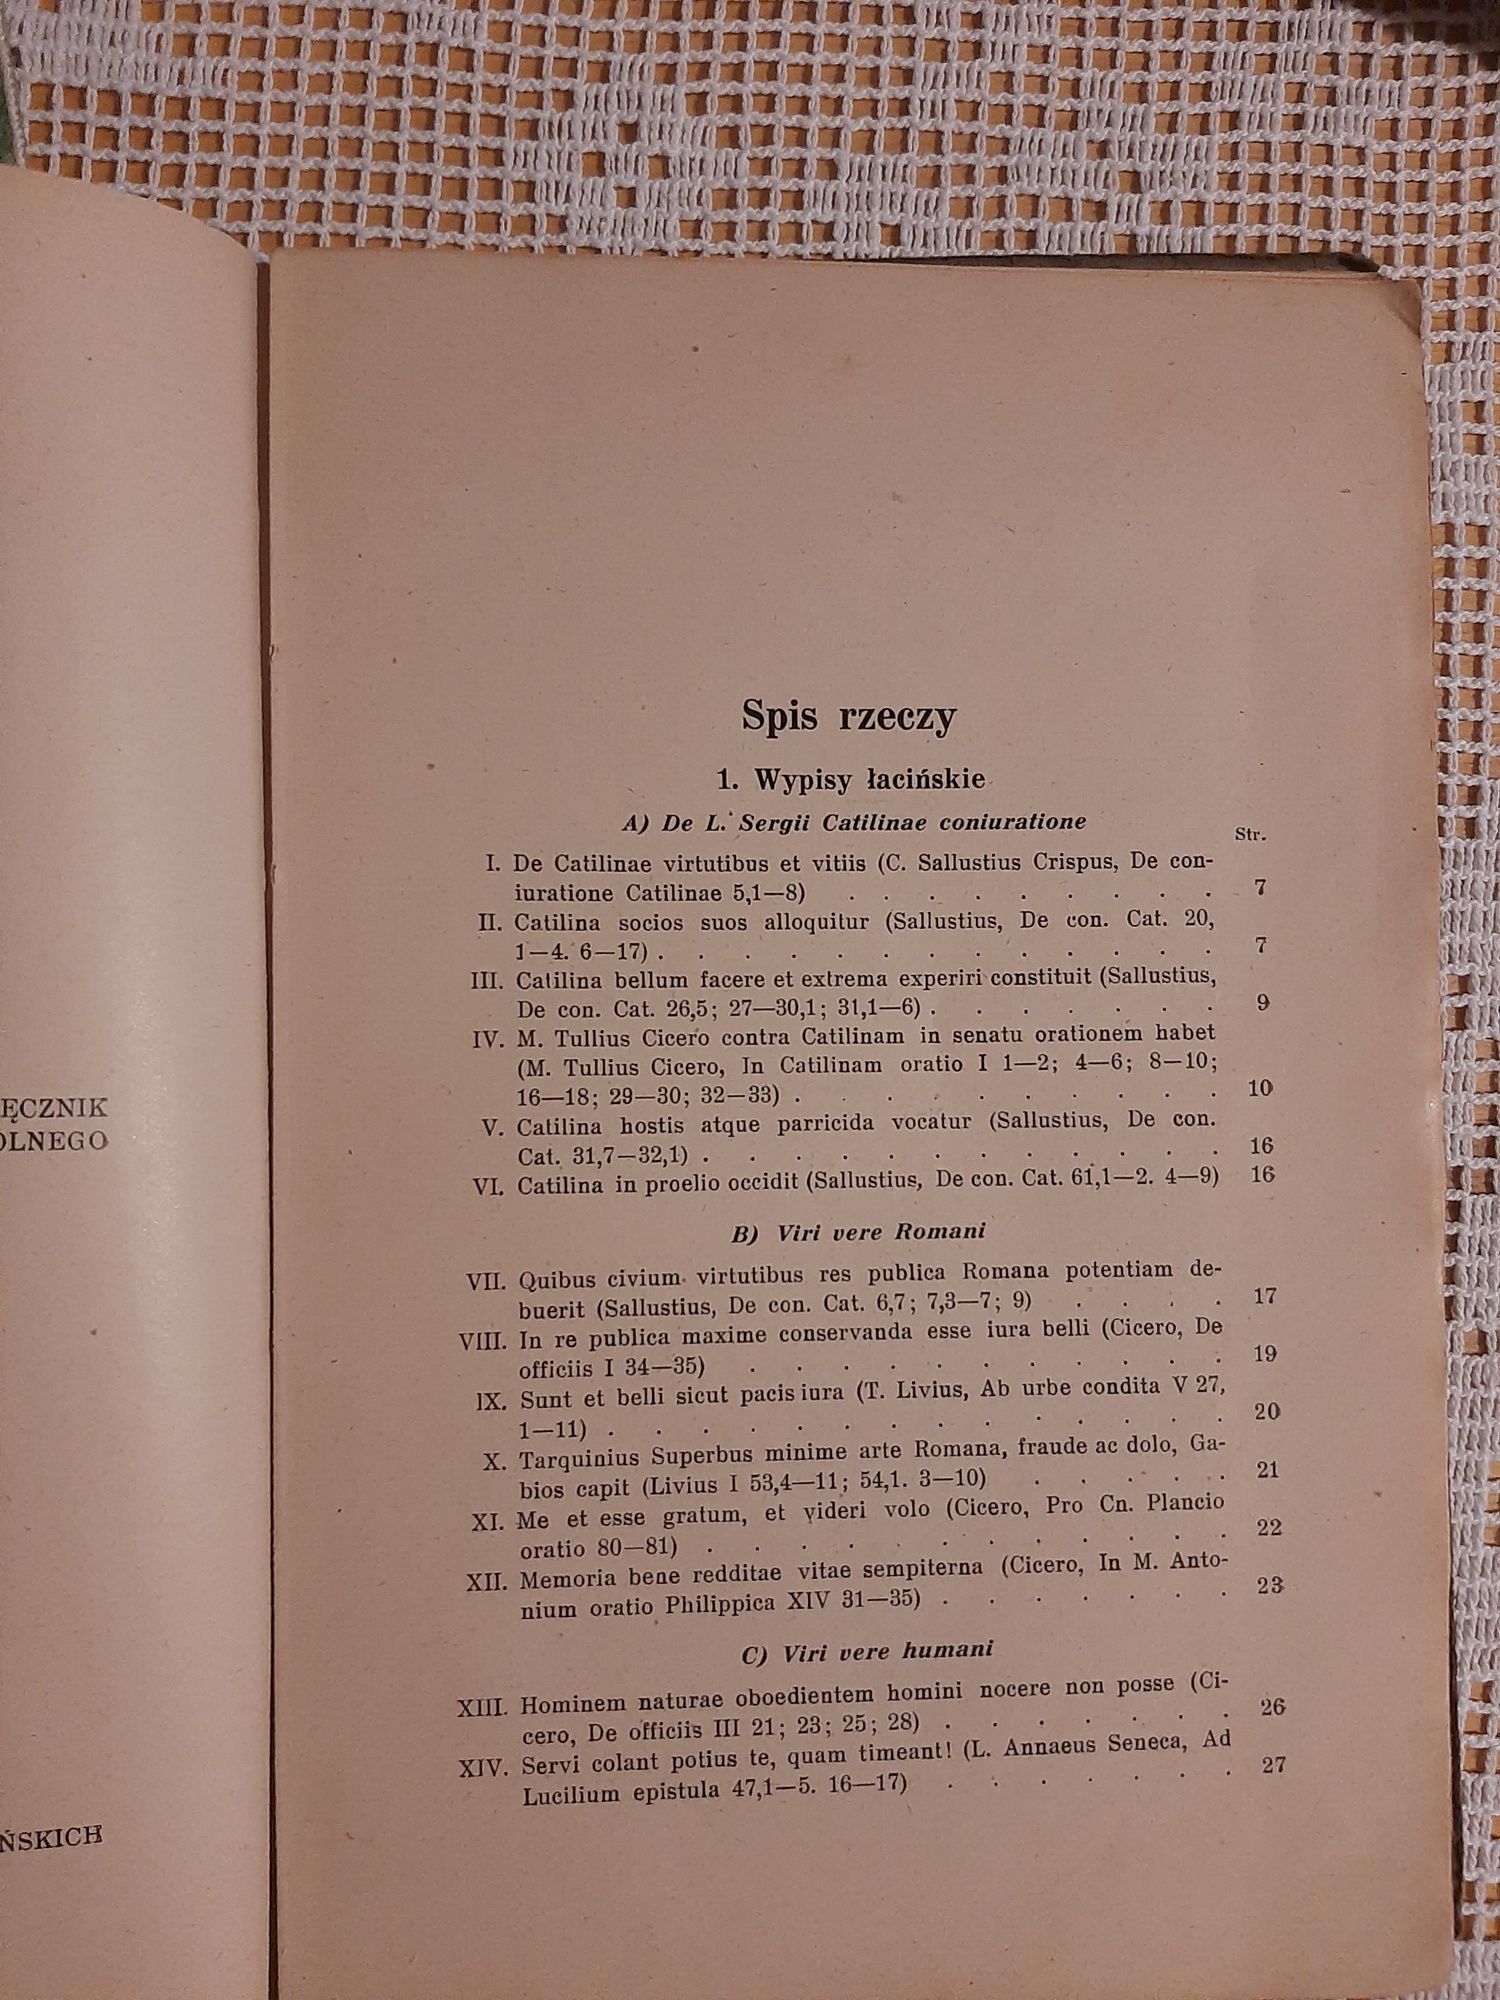 Elementa Latina podręcznik do łaciny Skibina Lwów 1937